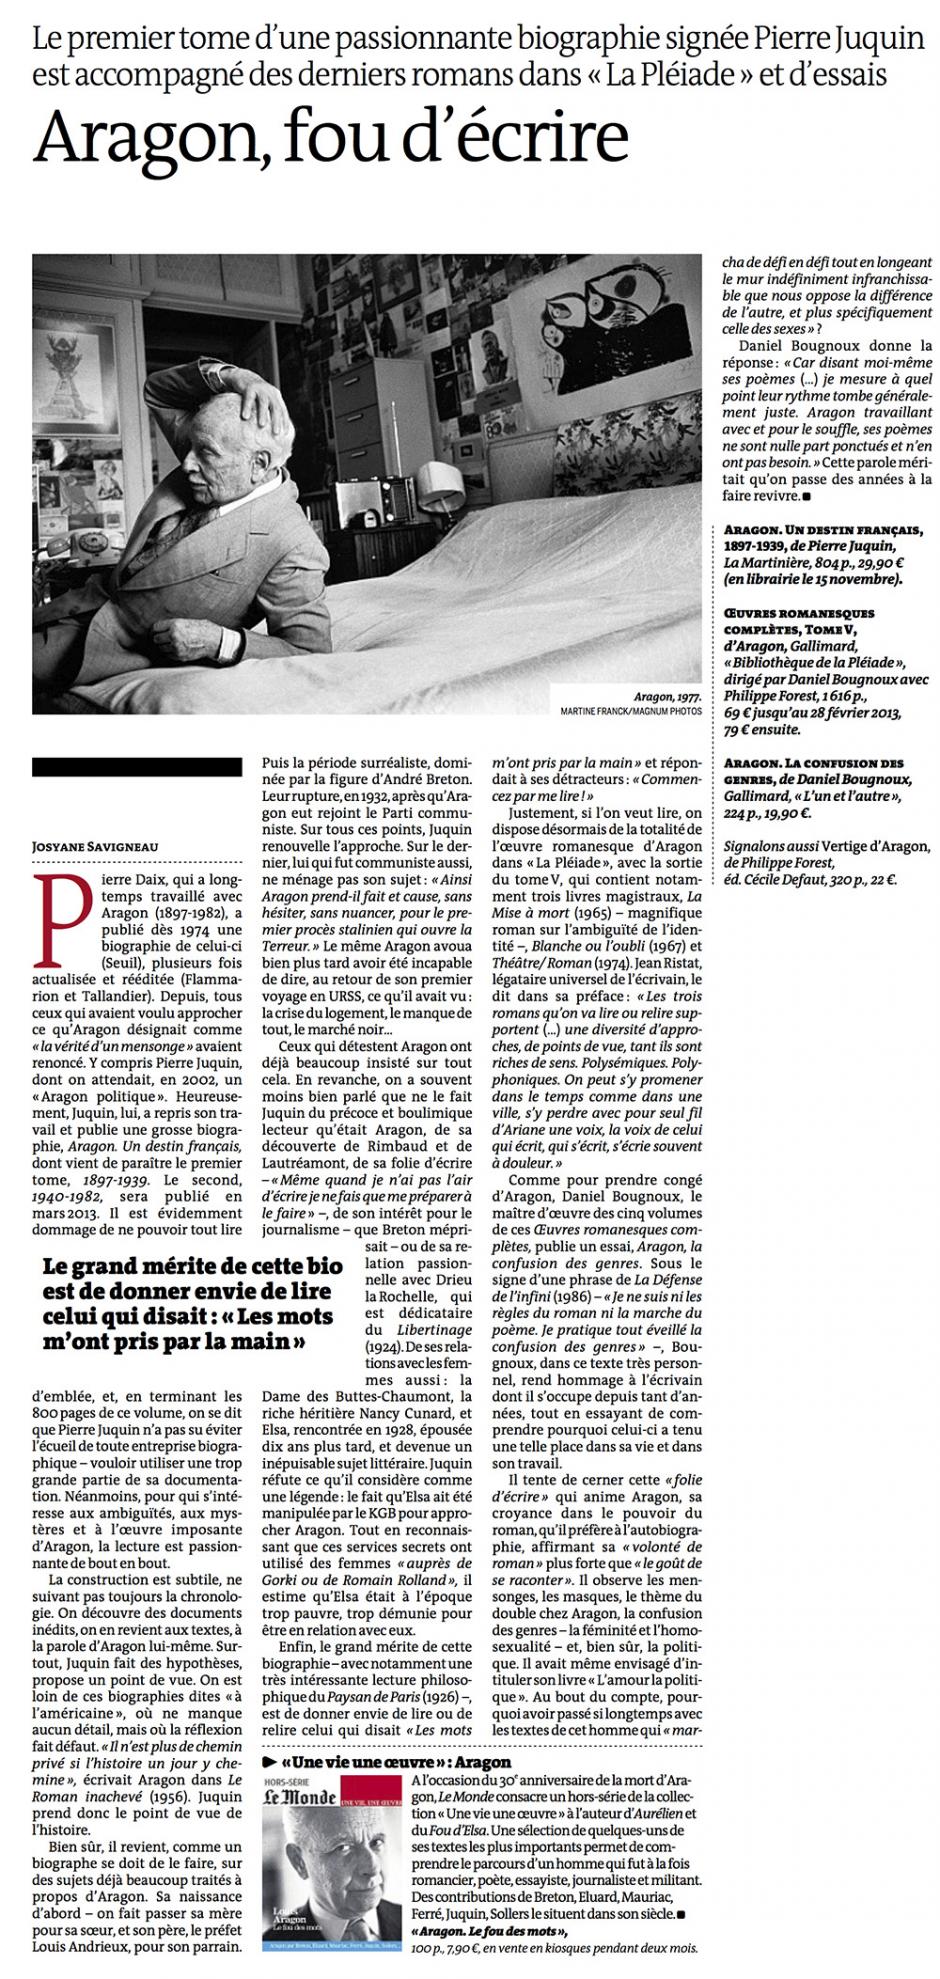 20121109-Le Monde-Aragon, fou d'écrire